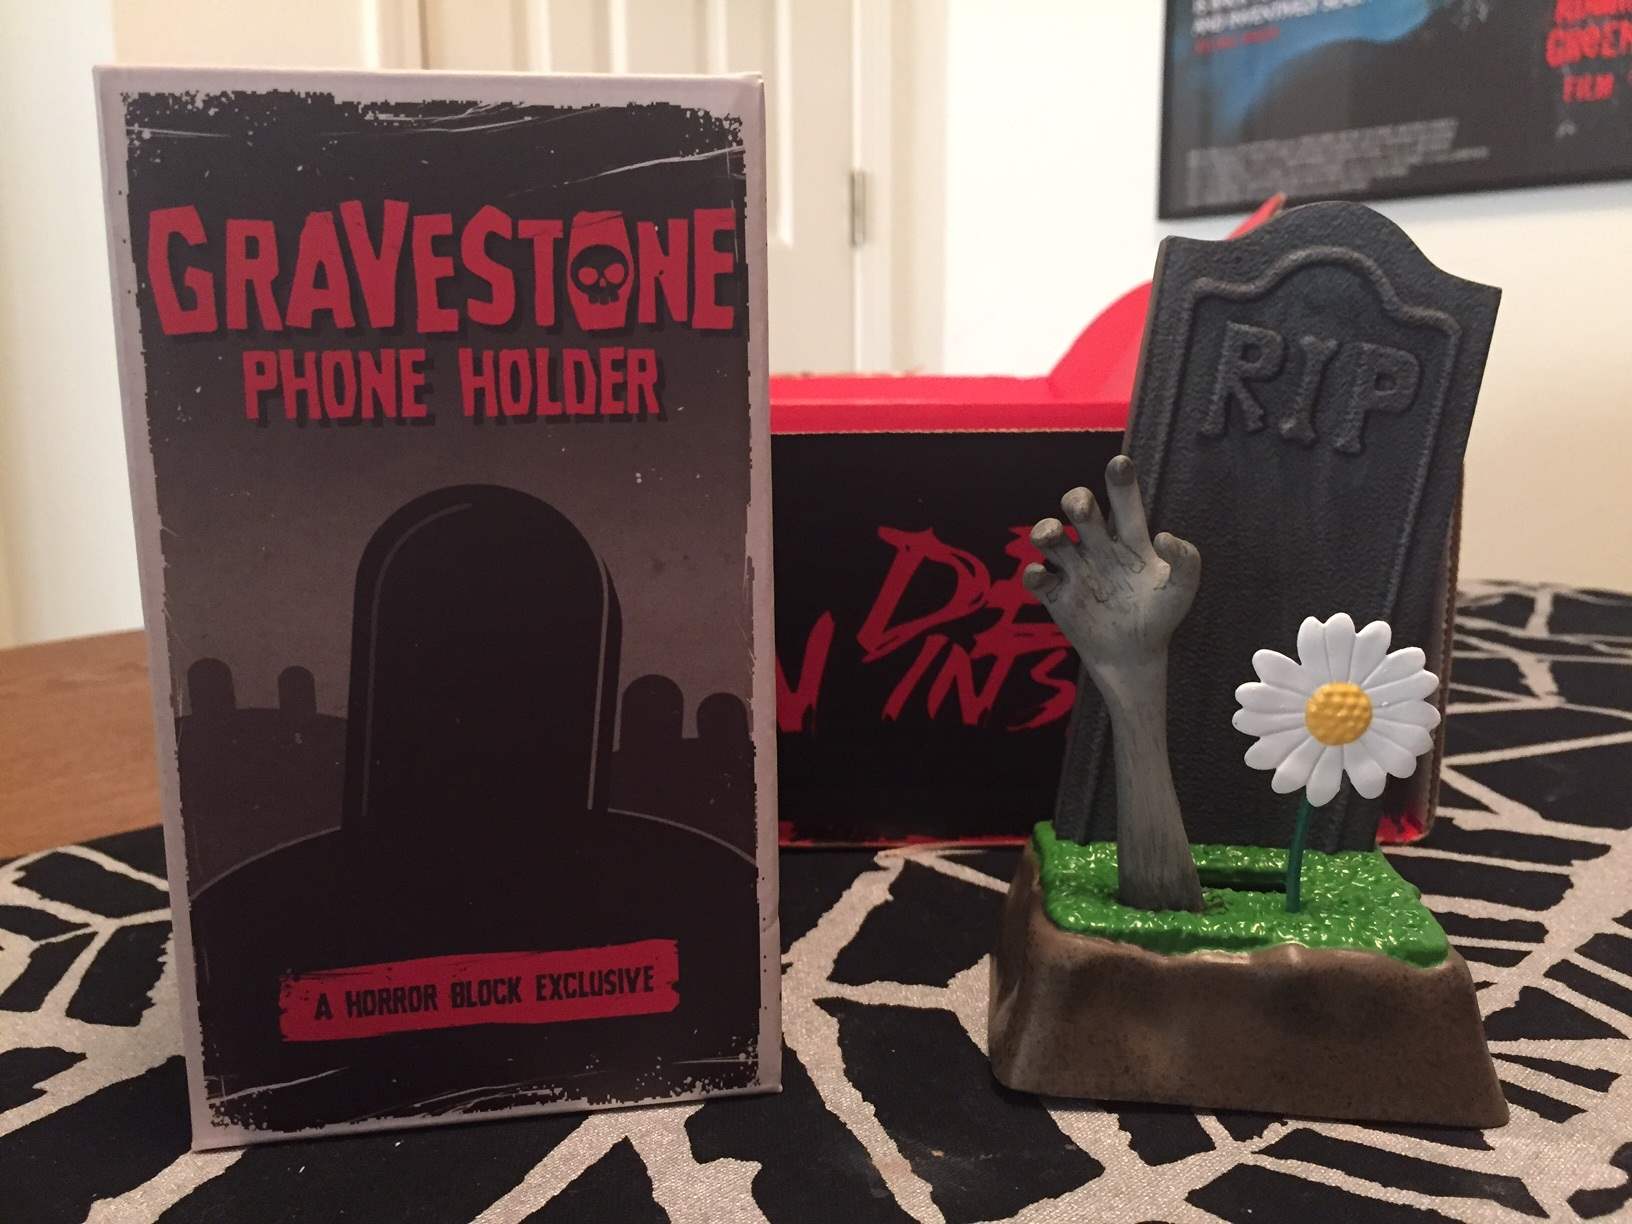 Gravestone cell phone holder